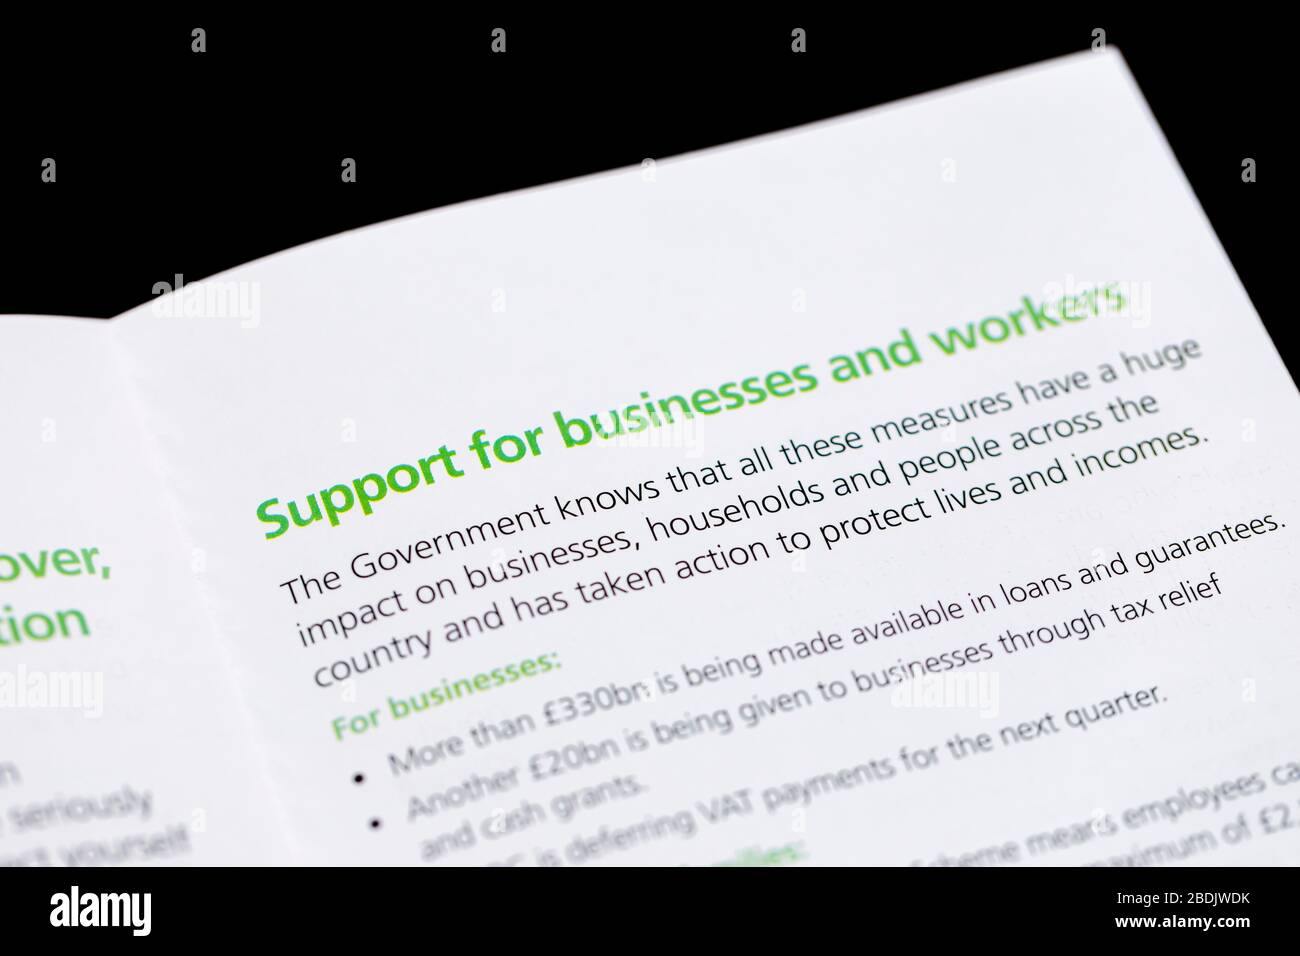 Coronavirus Botschaft der britischen Regierung in einem Brief und einer Broschüre, die an jedem Haus mit Details zur Unterstützung von Unternehmen und Arbeitern veröffentlicht wurde Stockfoto